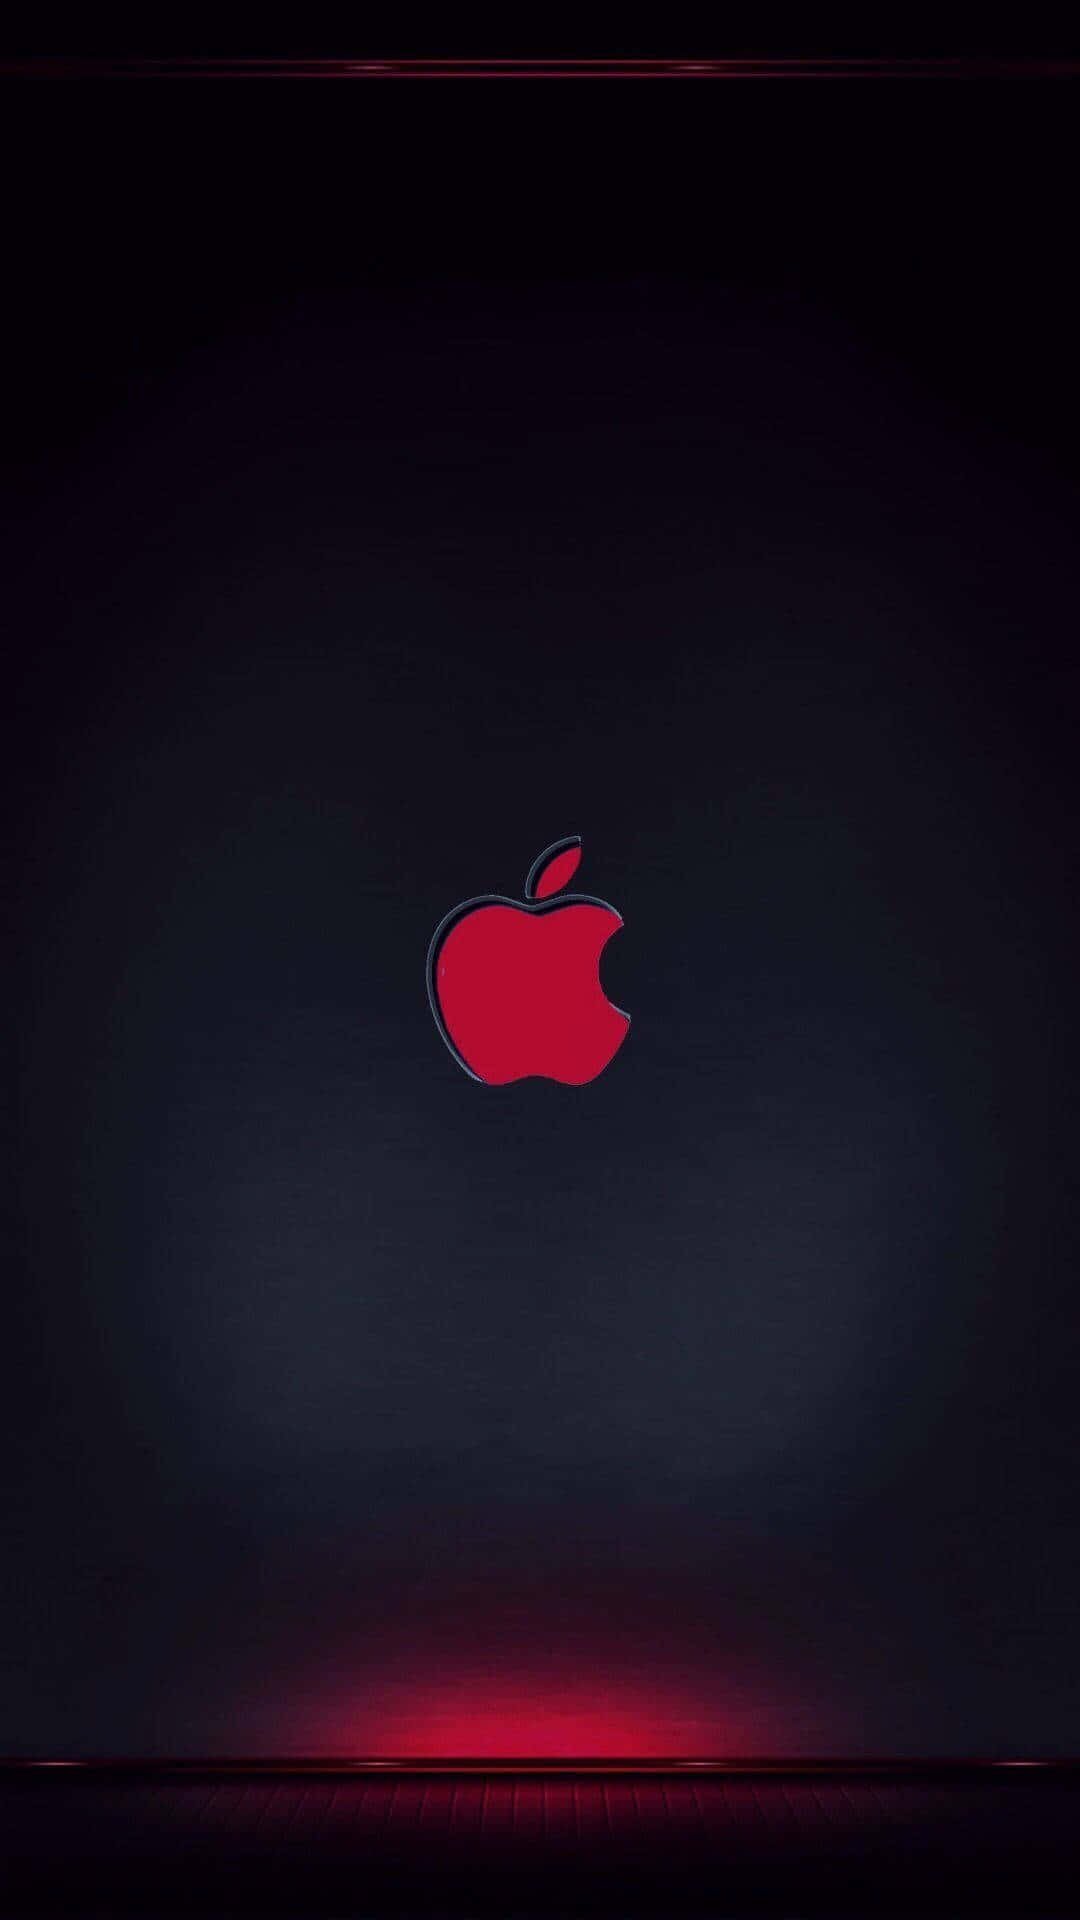 Apple's ikoniske logo på bagsiden af den nye Iphone X. Wallpaper